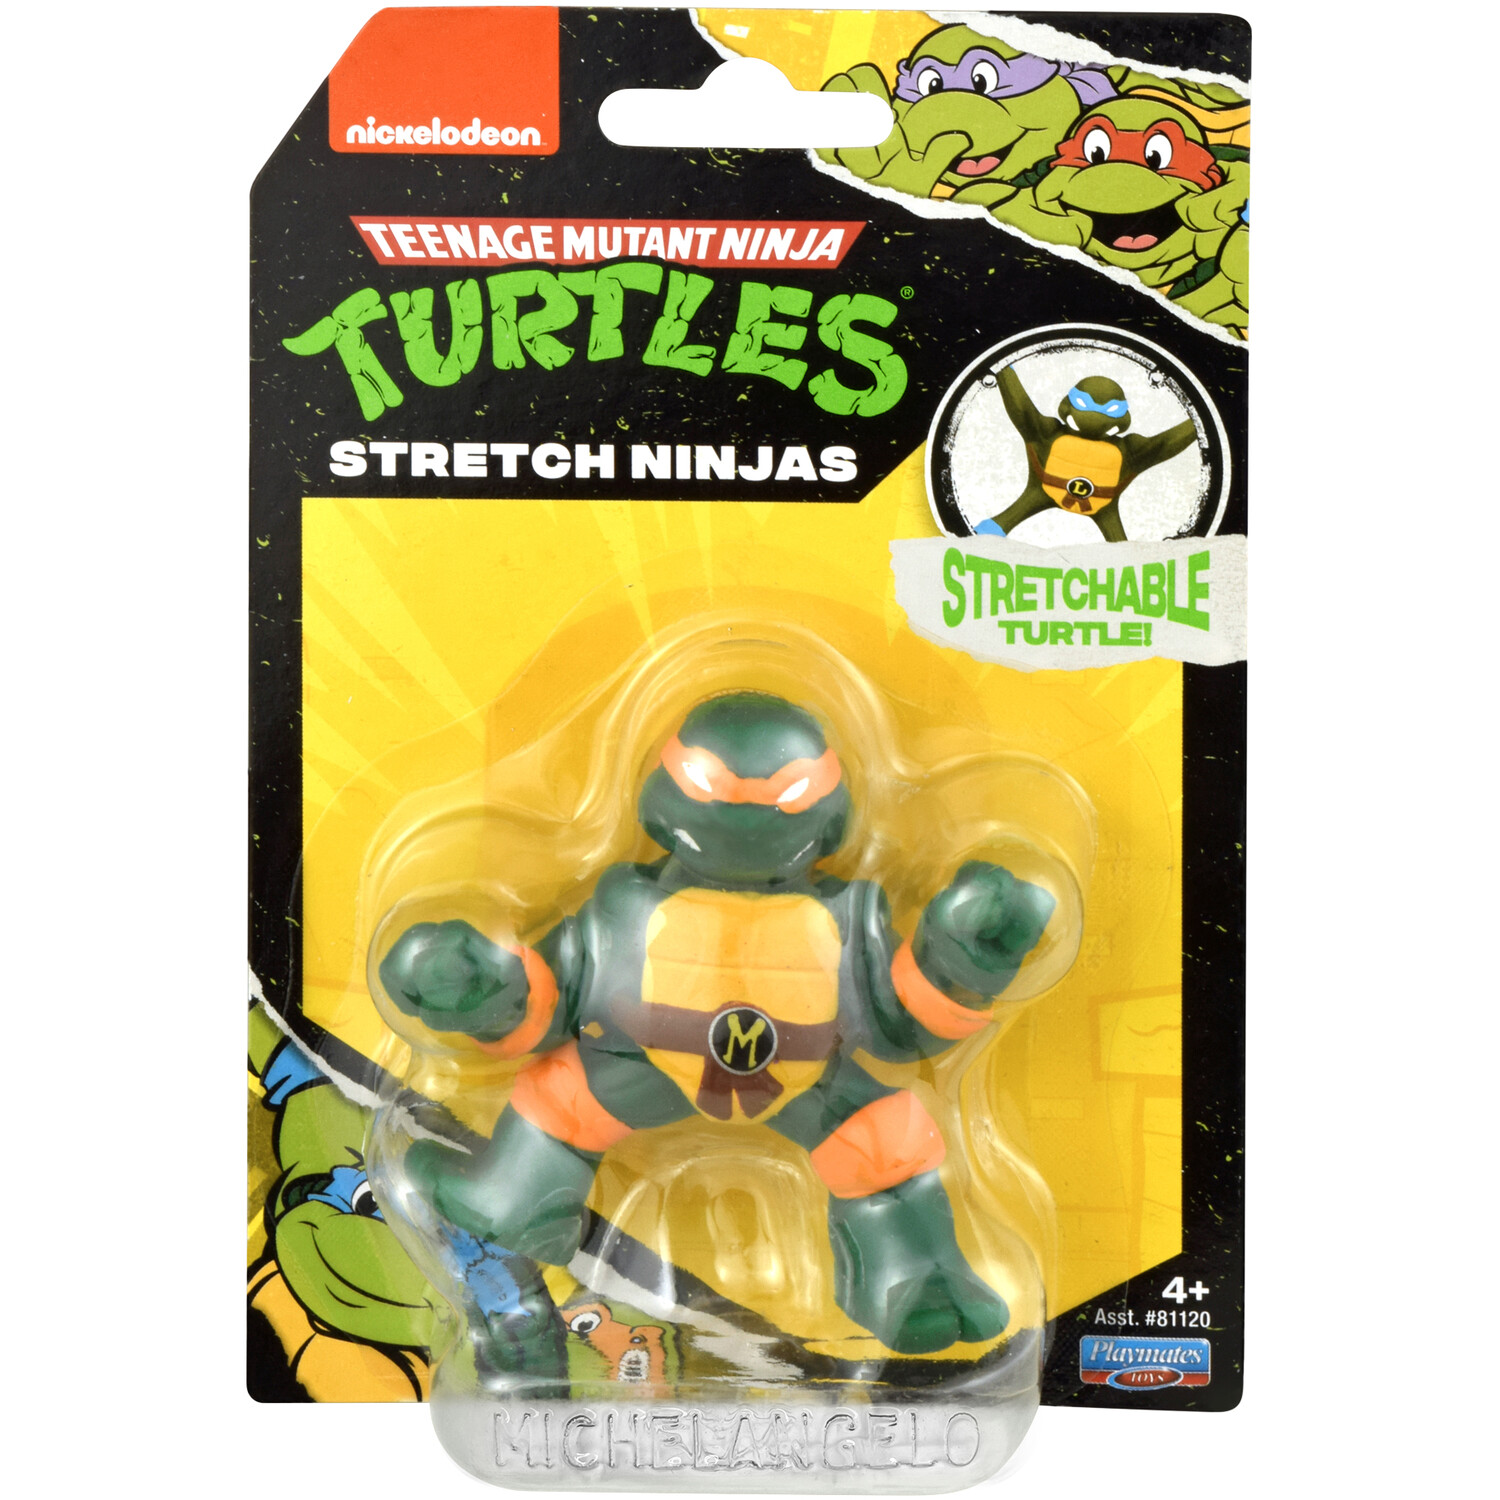 Teenage Mutant Ninja Turtles Mini Ninja Stretch Figures Image 2